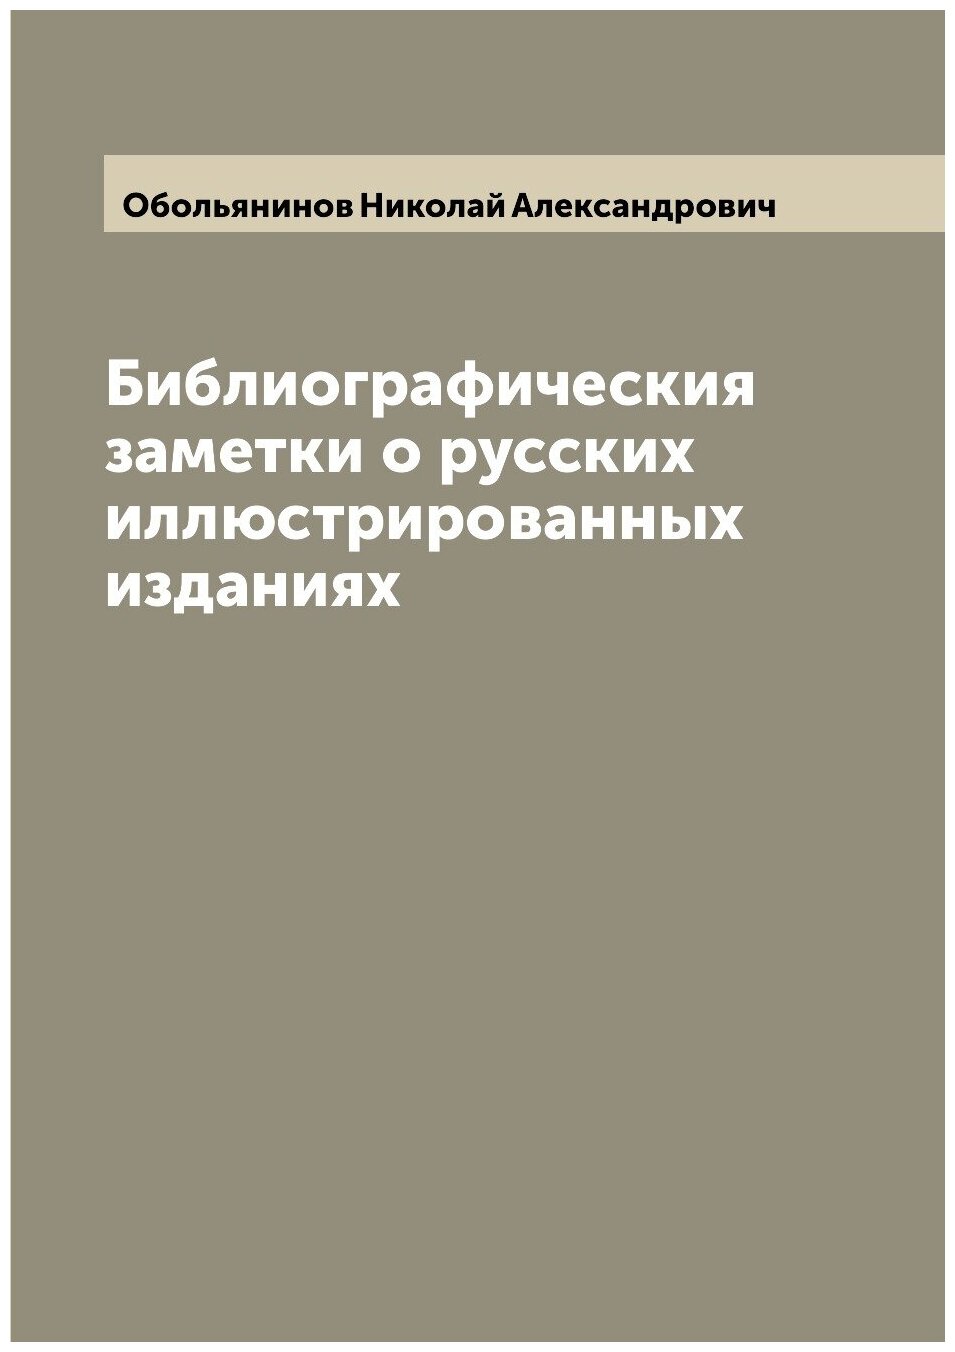 Библиографическия заметки о русских иллюстрированных изданиях